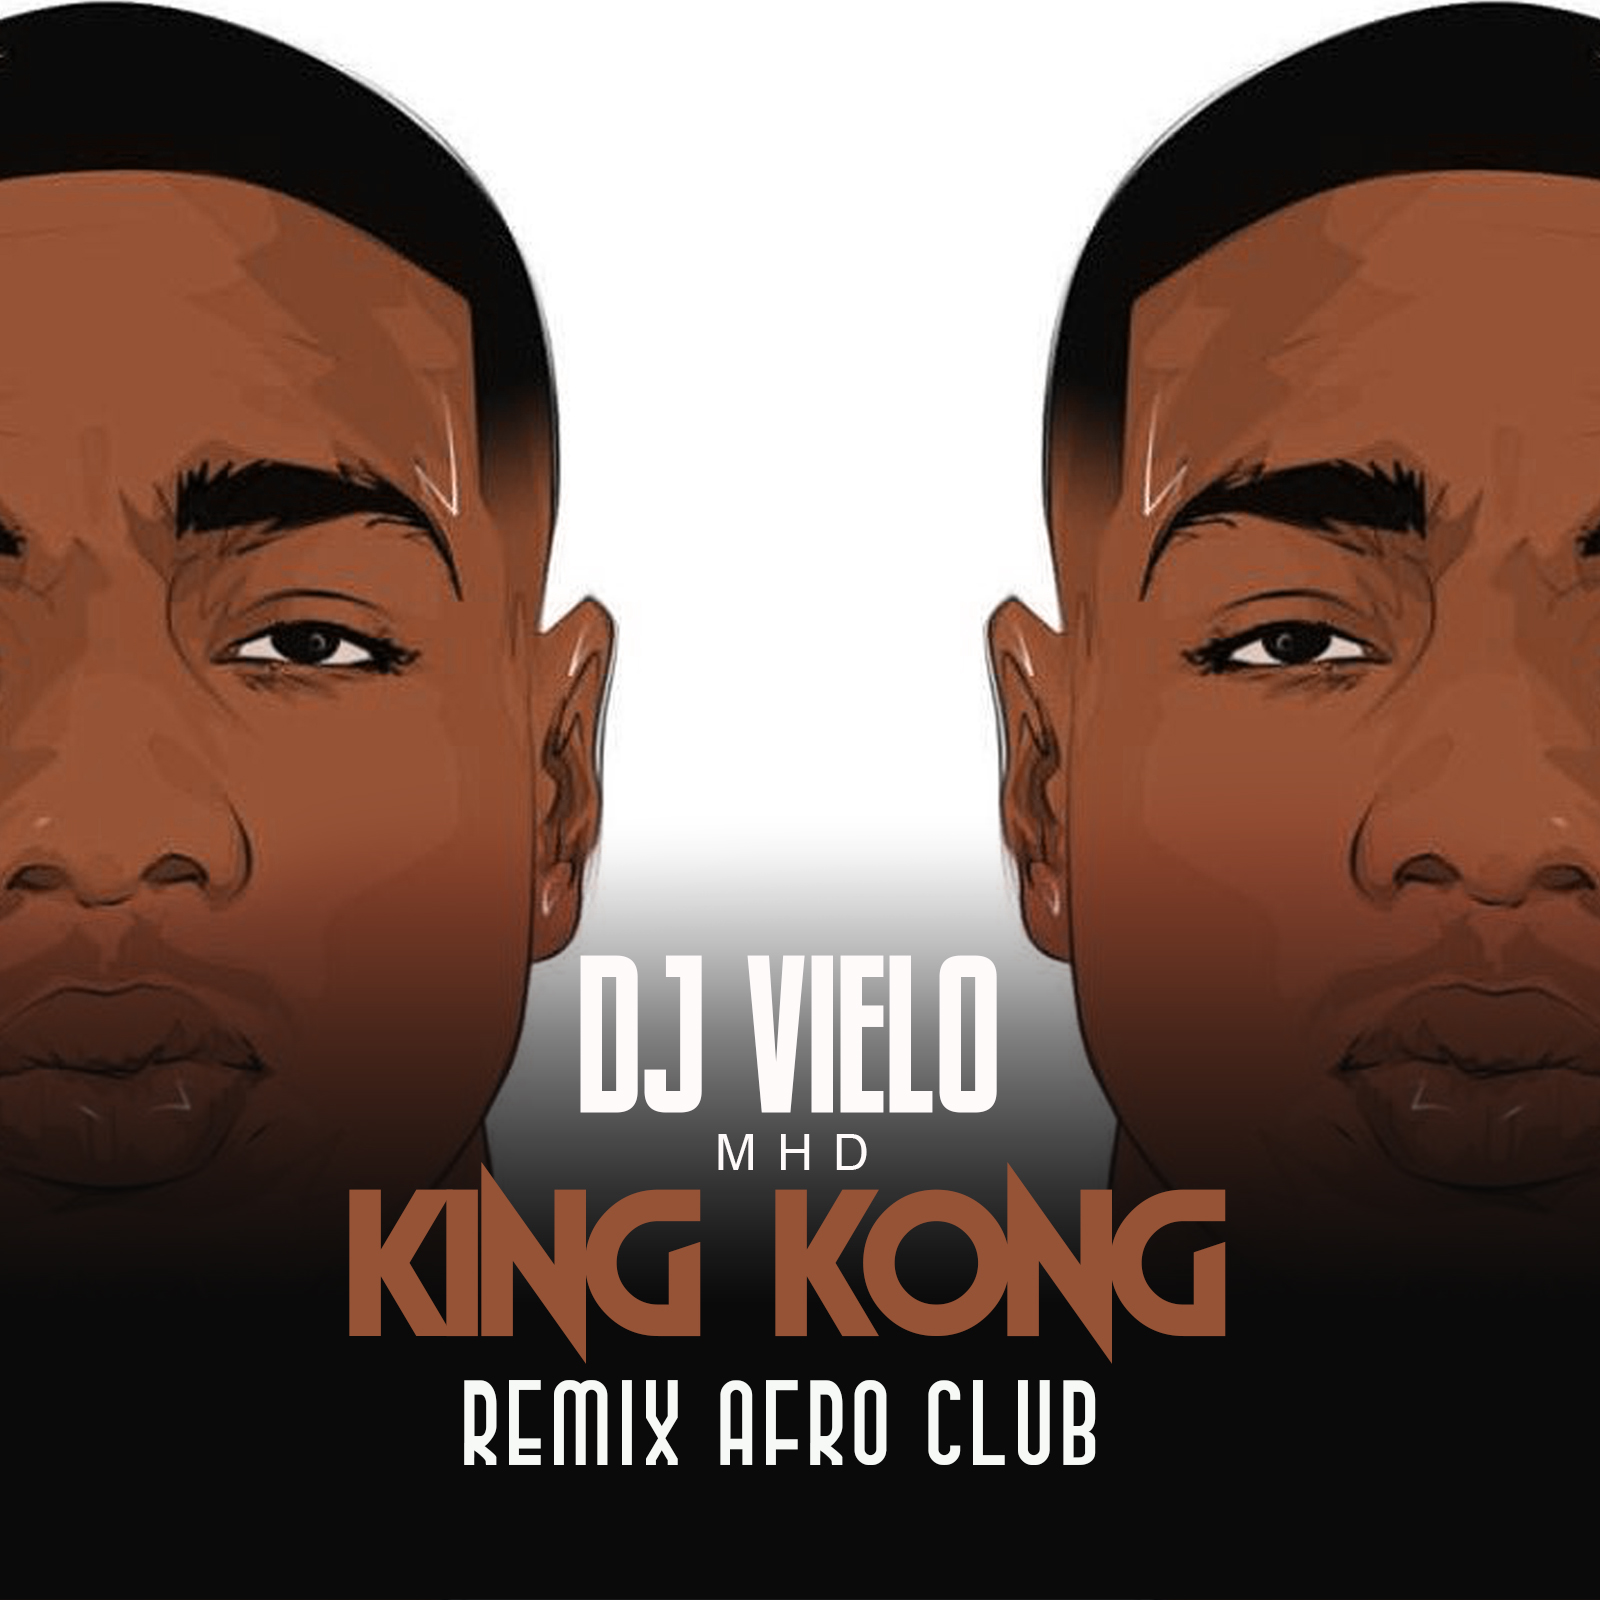 Lejupielādēt Dj Vielo X MHD - AFRO TRAP Part.11 (King Kong) Remix Afro Club DISPO SUR SPOTIFY, DEEZER, ITUNES